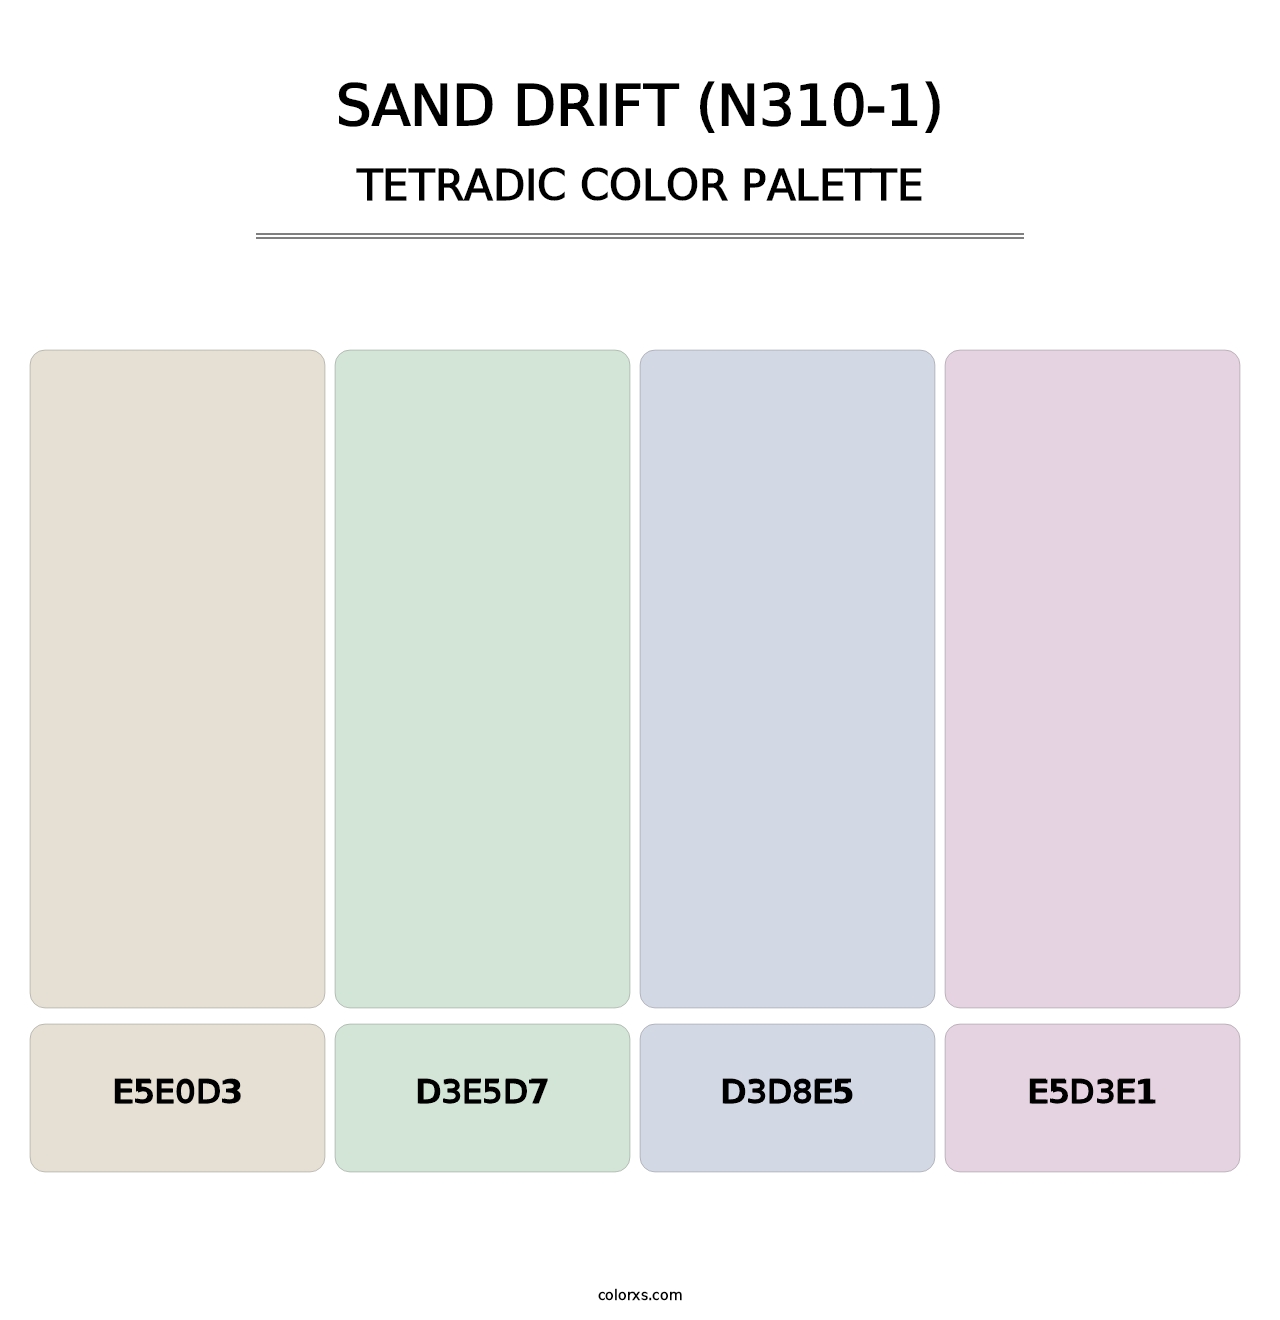 Sand Drift (N310-1) - Tetradic Color Palette